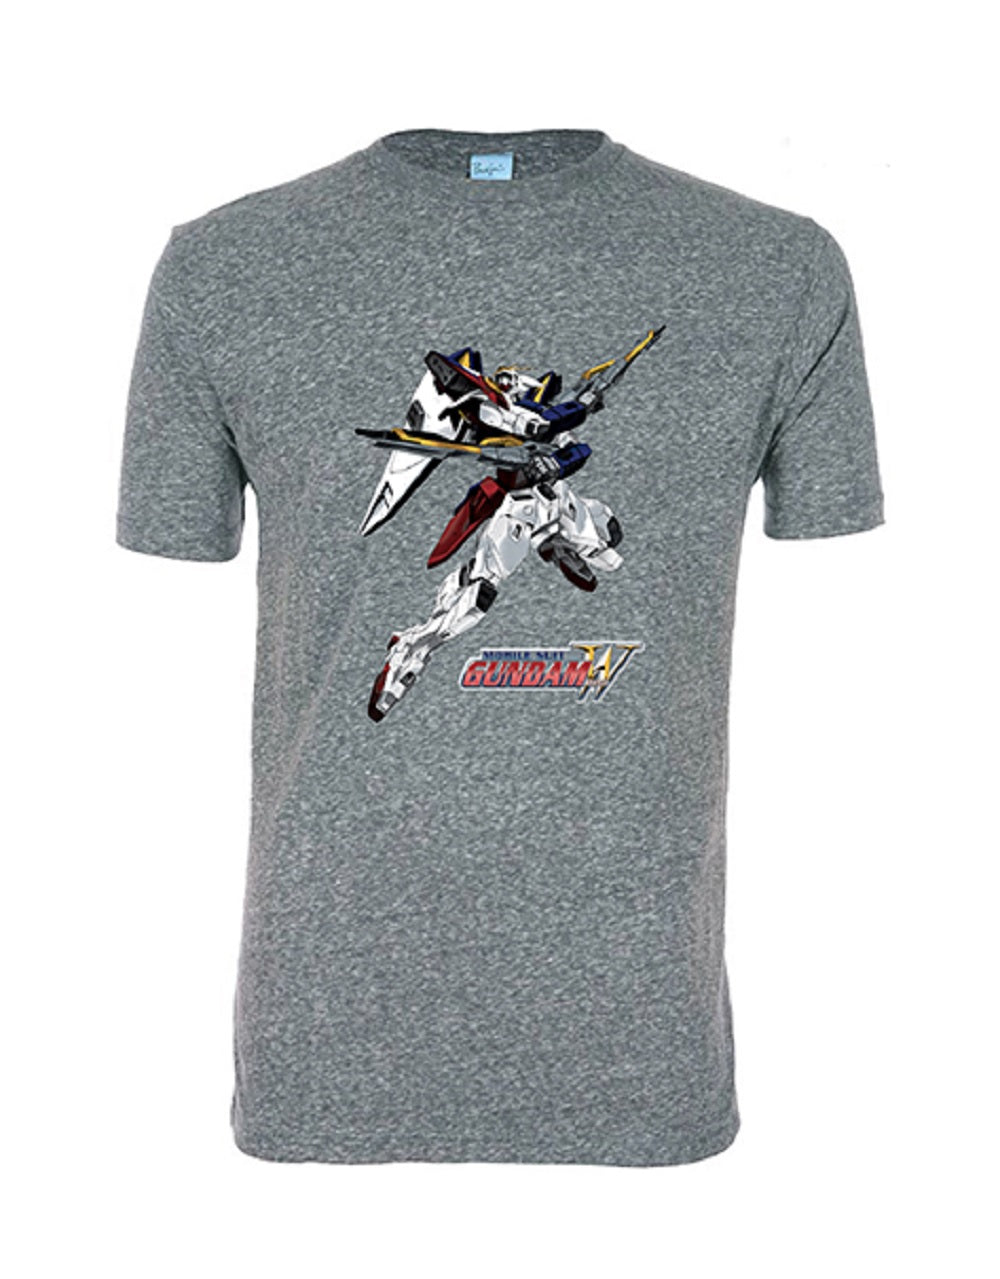 Gundam Wing Xxxg-01 Wing Gundam Adult T-Shirt